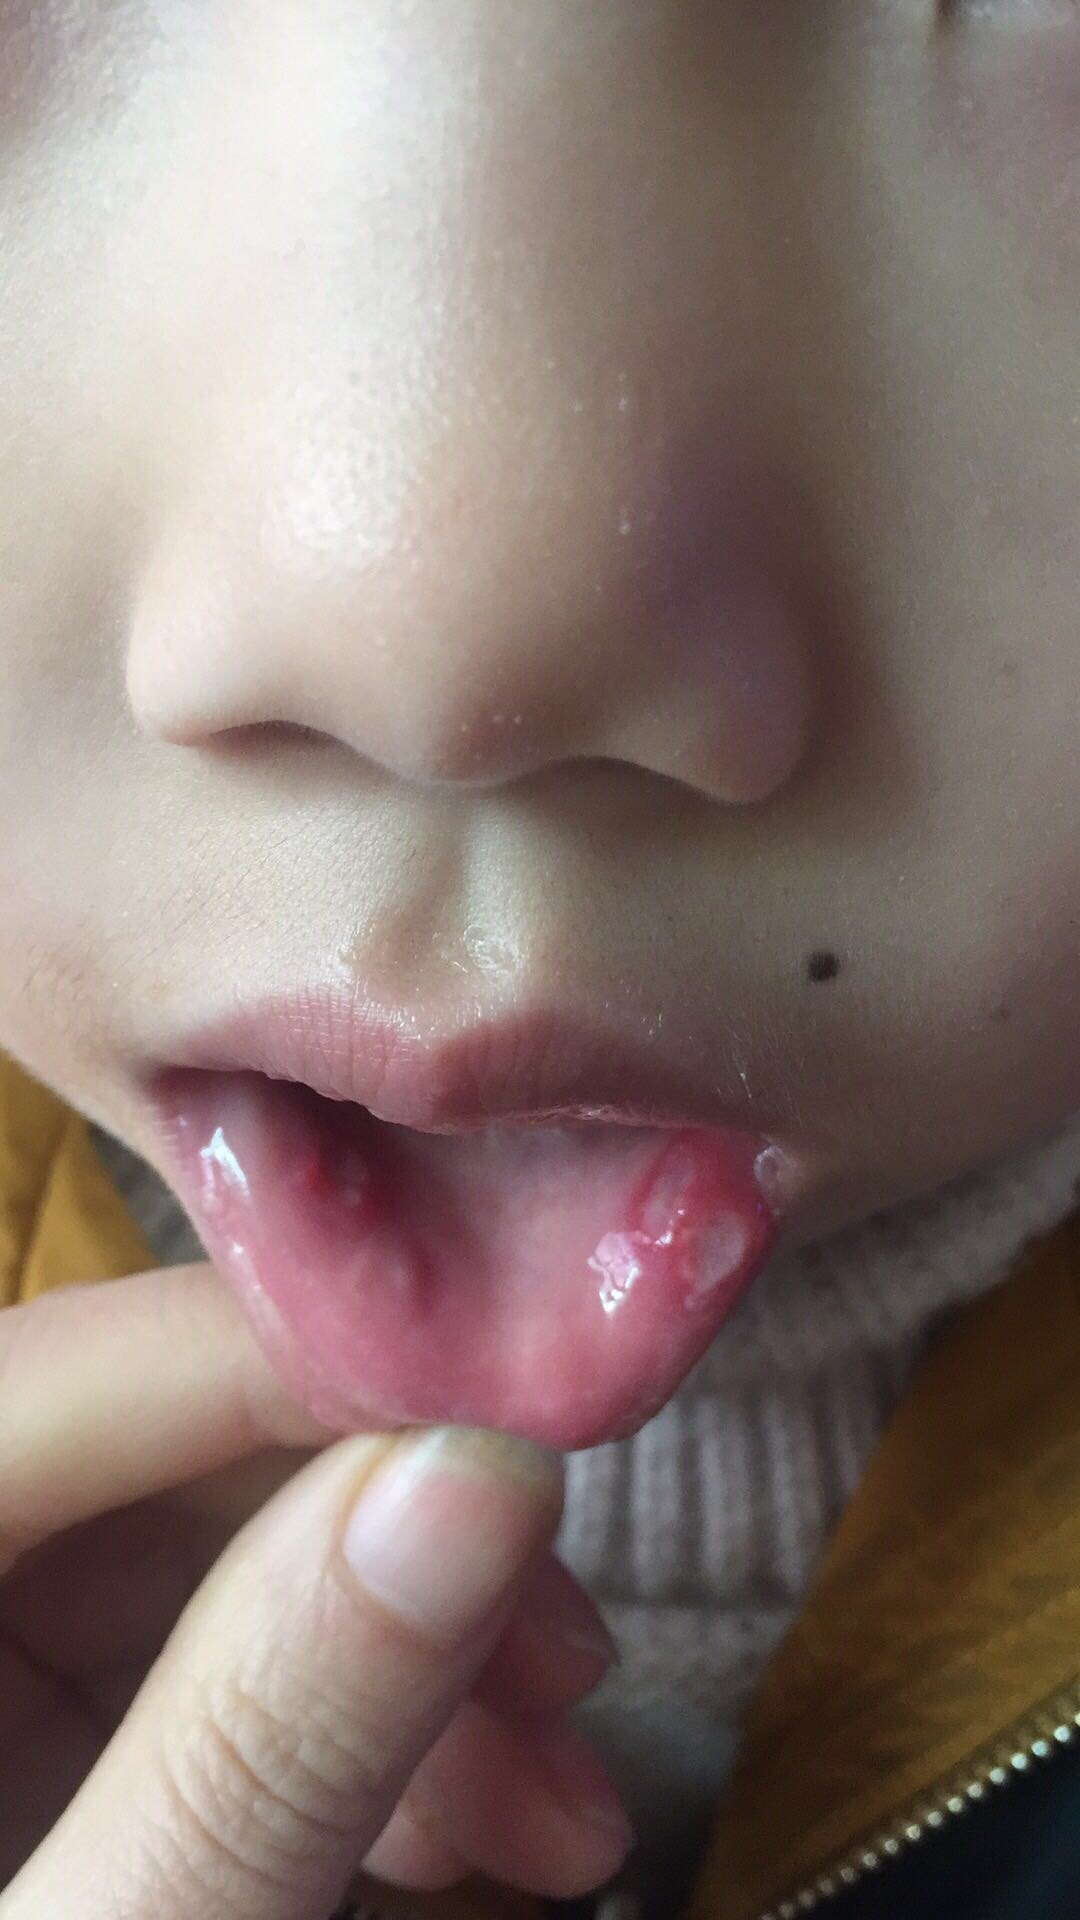 孩子口腔溃疡图片图片